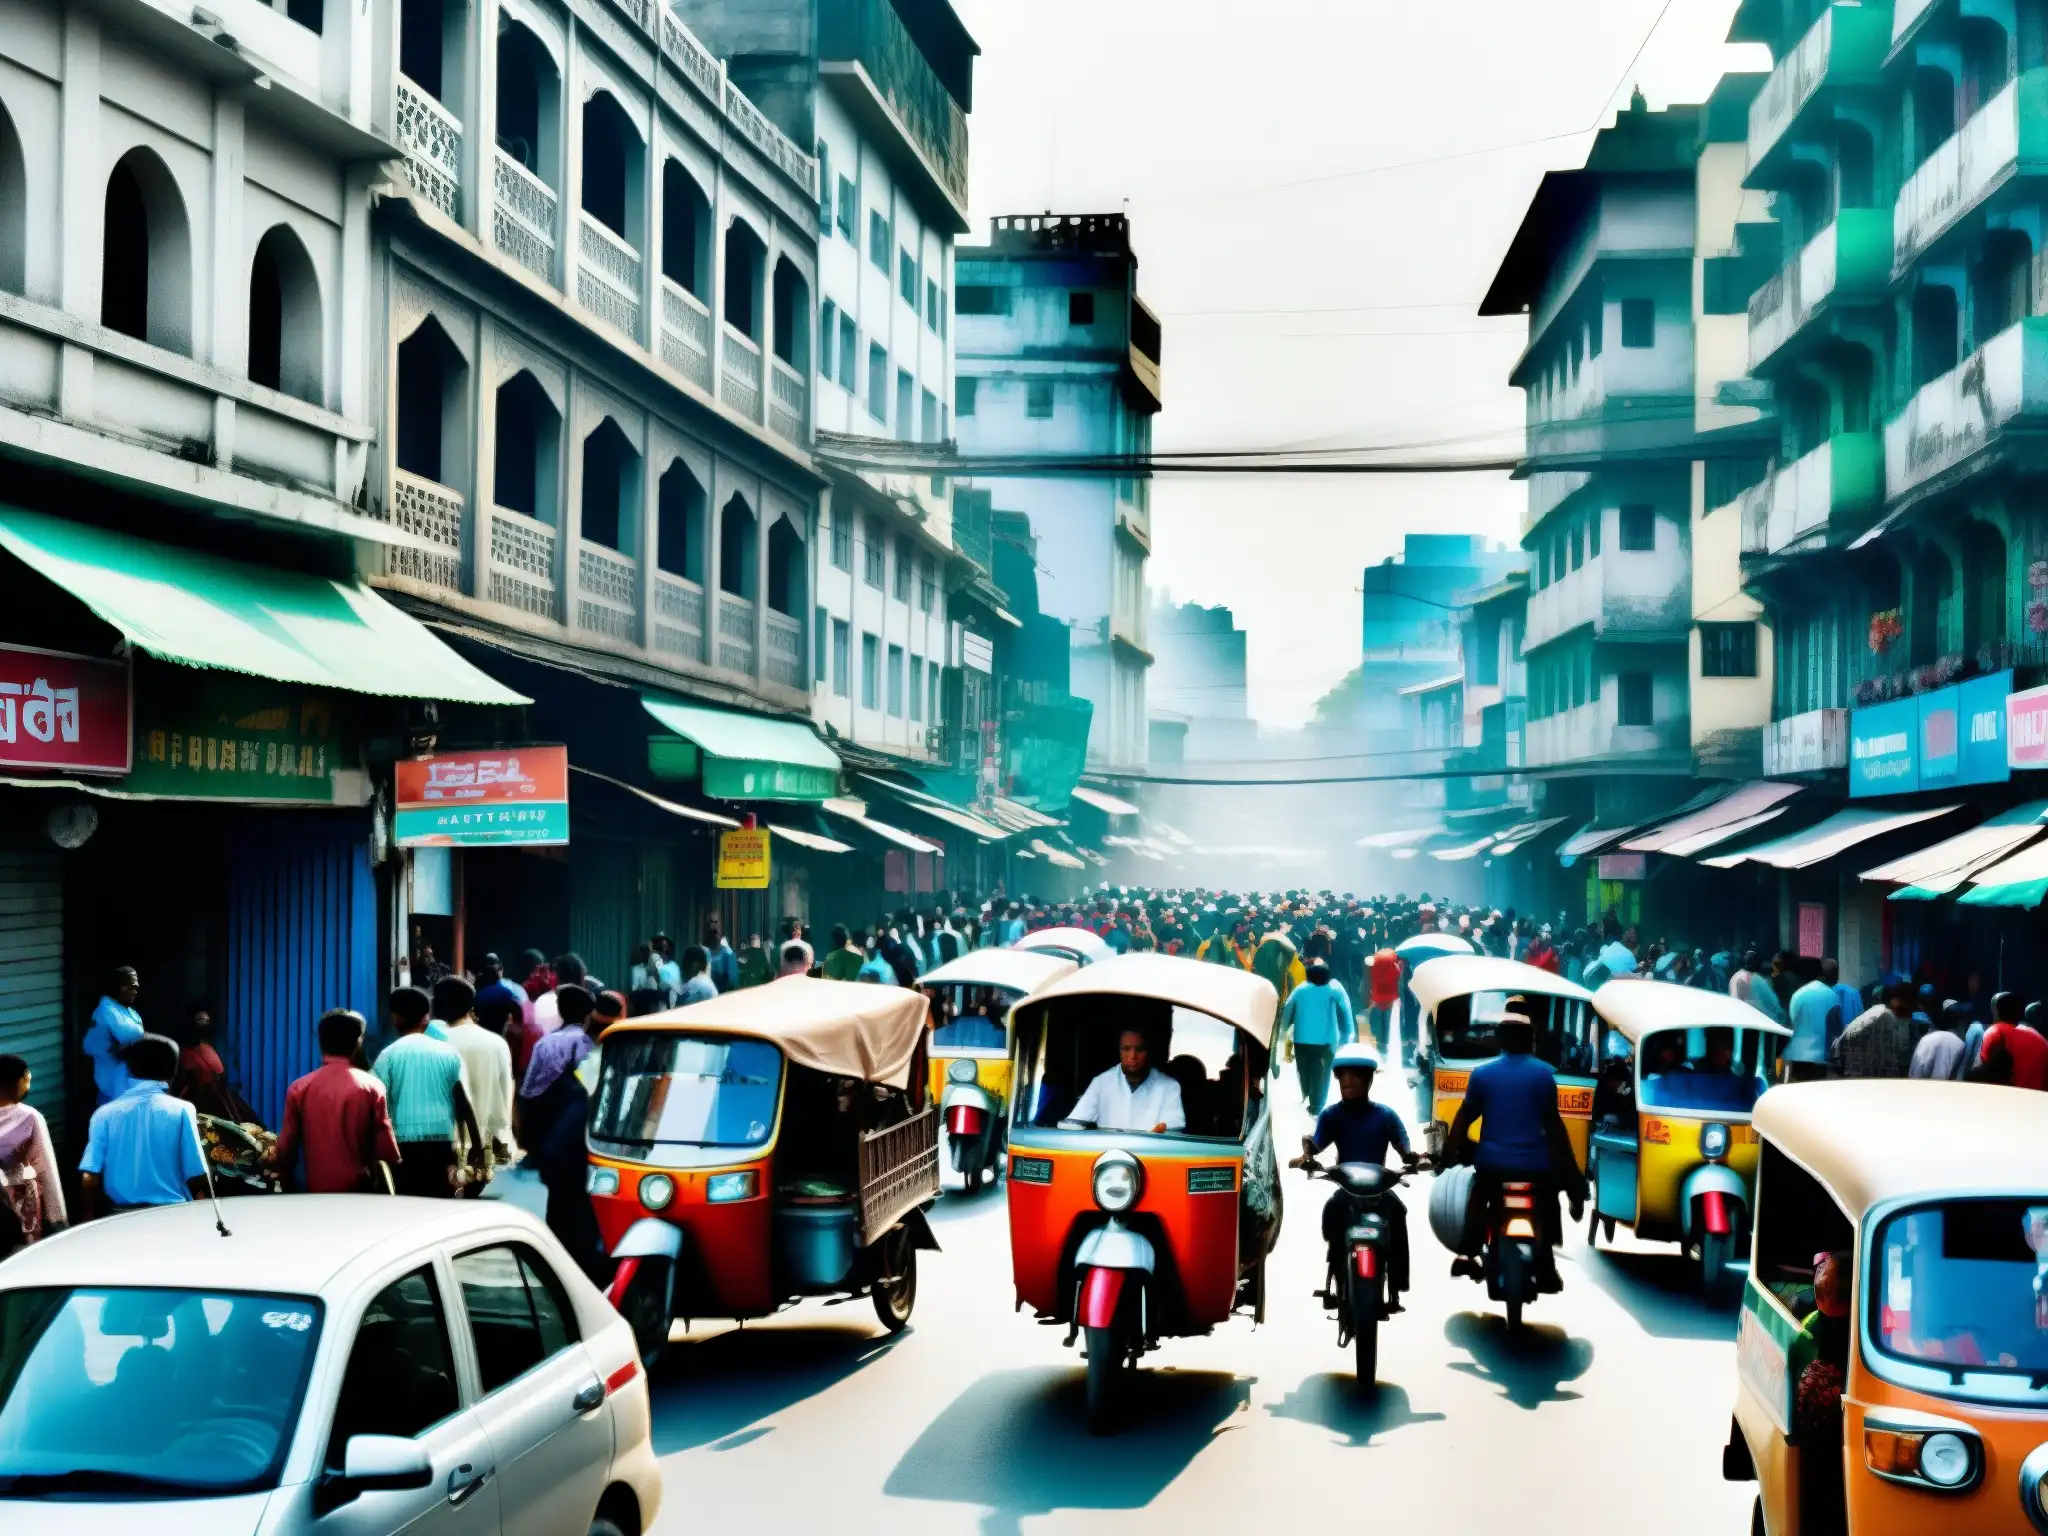 Vibrante escena callejera en Bangladesh con rickshaws, peatones y vendedores